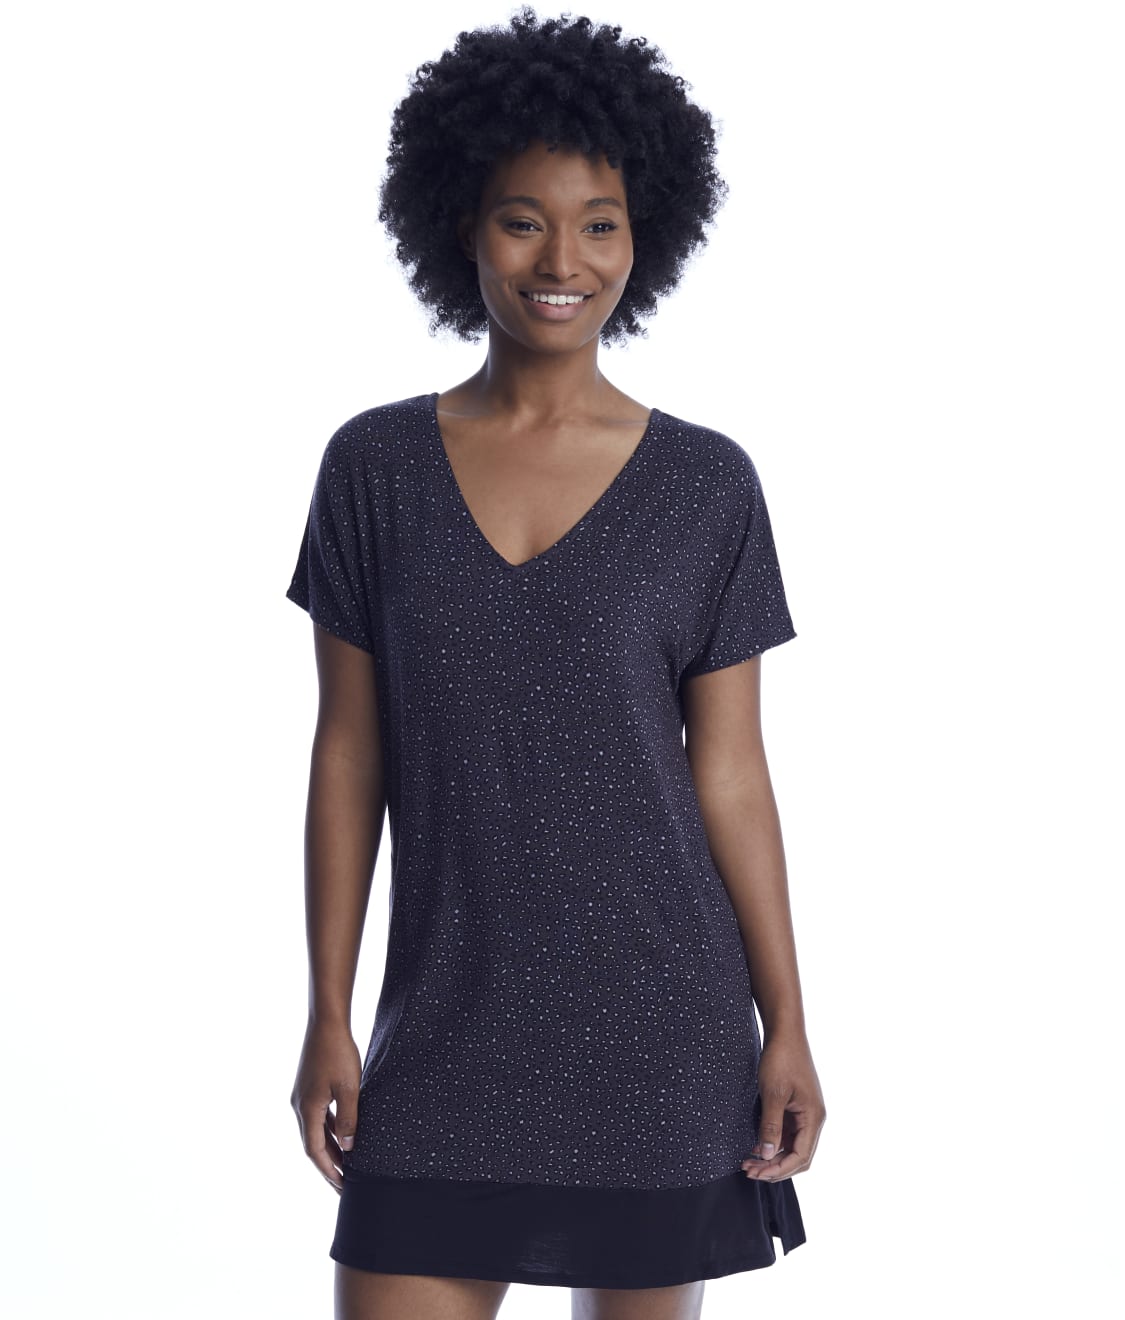 Donna Karan Sleepwear Modal Sleep Shirt & Reviews | Bare Necessities ...